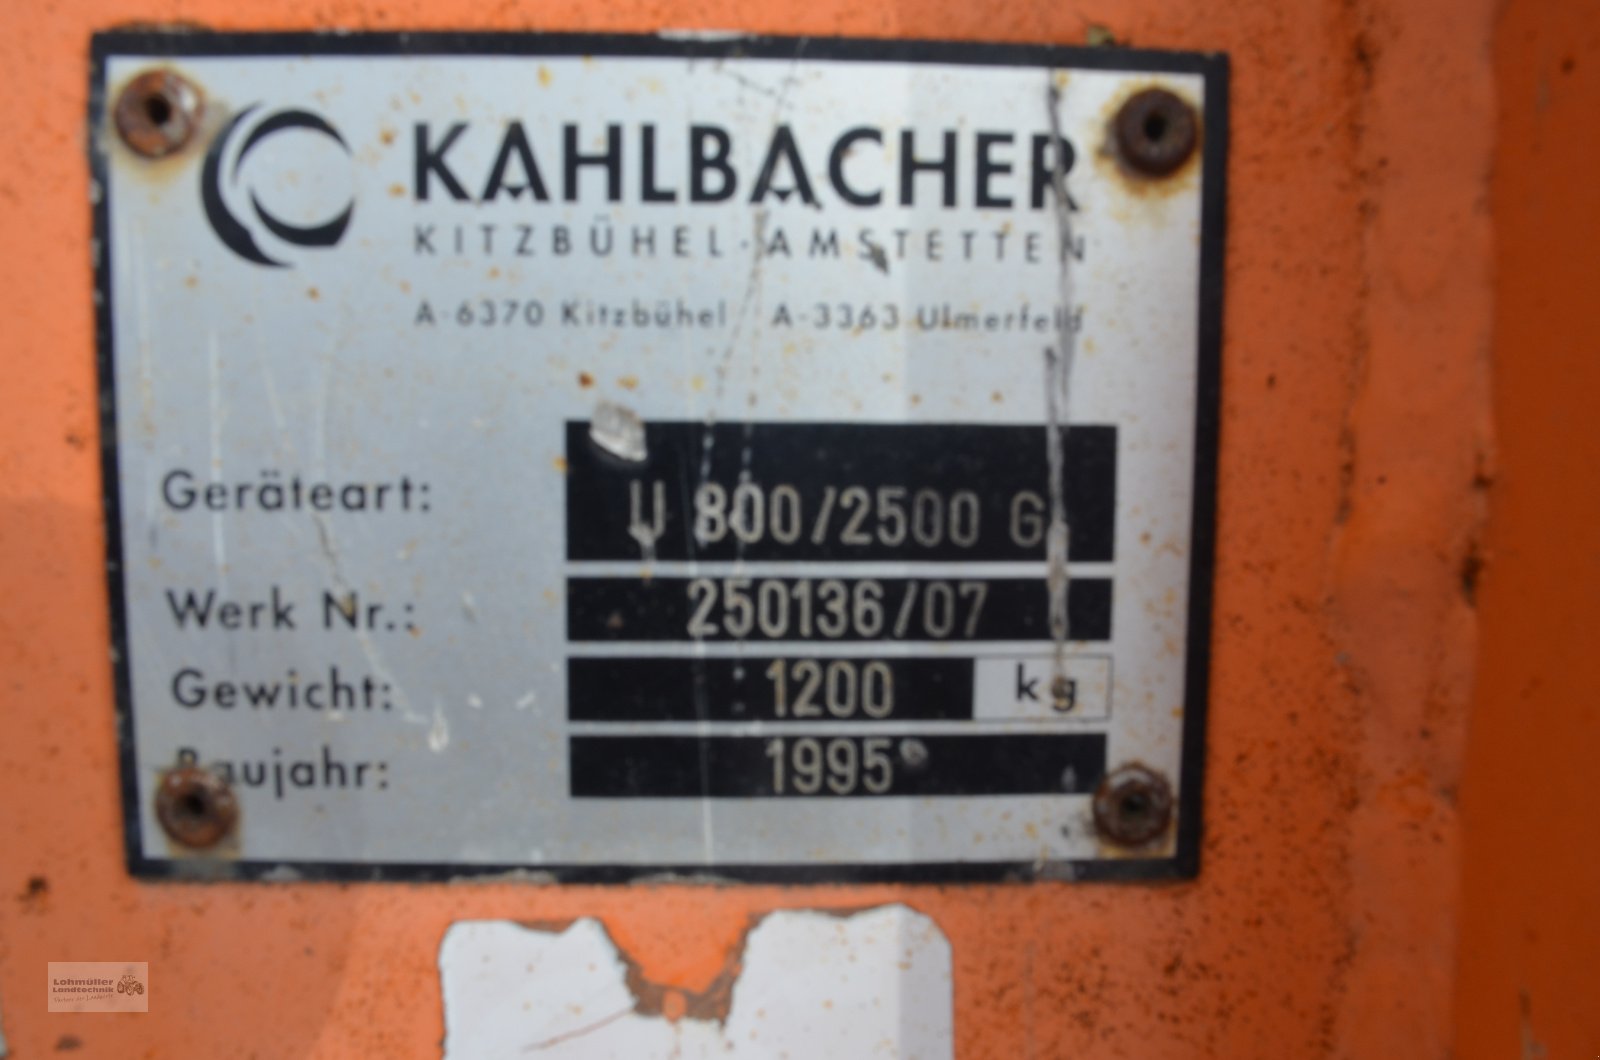 Sonstige Gartentechnik & Kommunaltechnik типа Kahlbacher U 800/2500 G, Gebrauchtmaschine в Traunreut (Фотография 3)